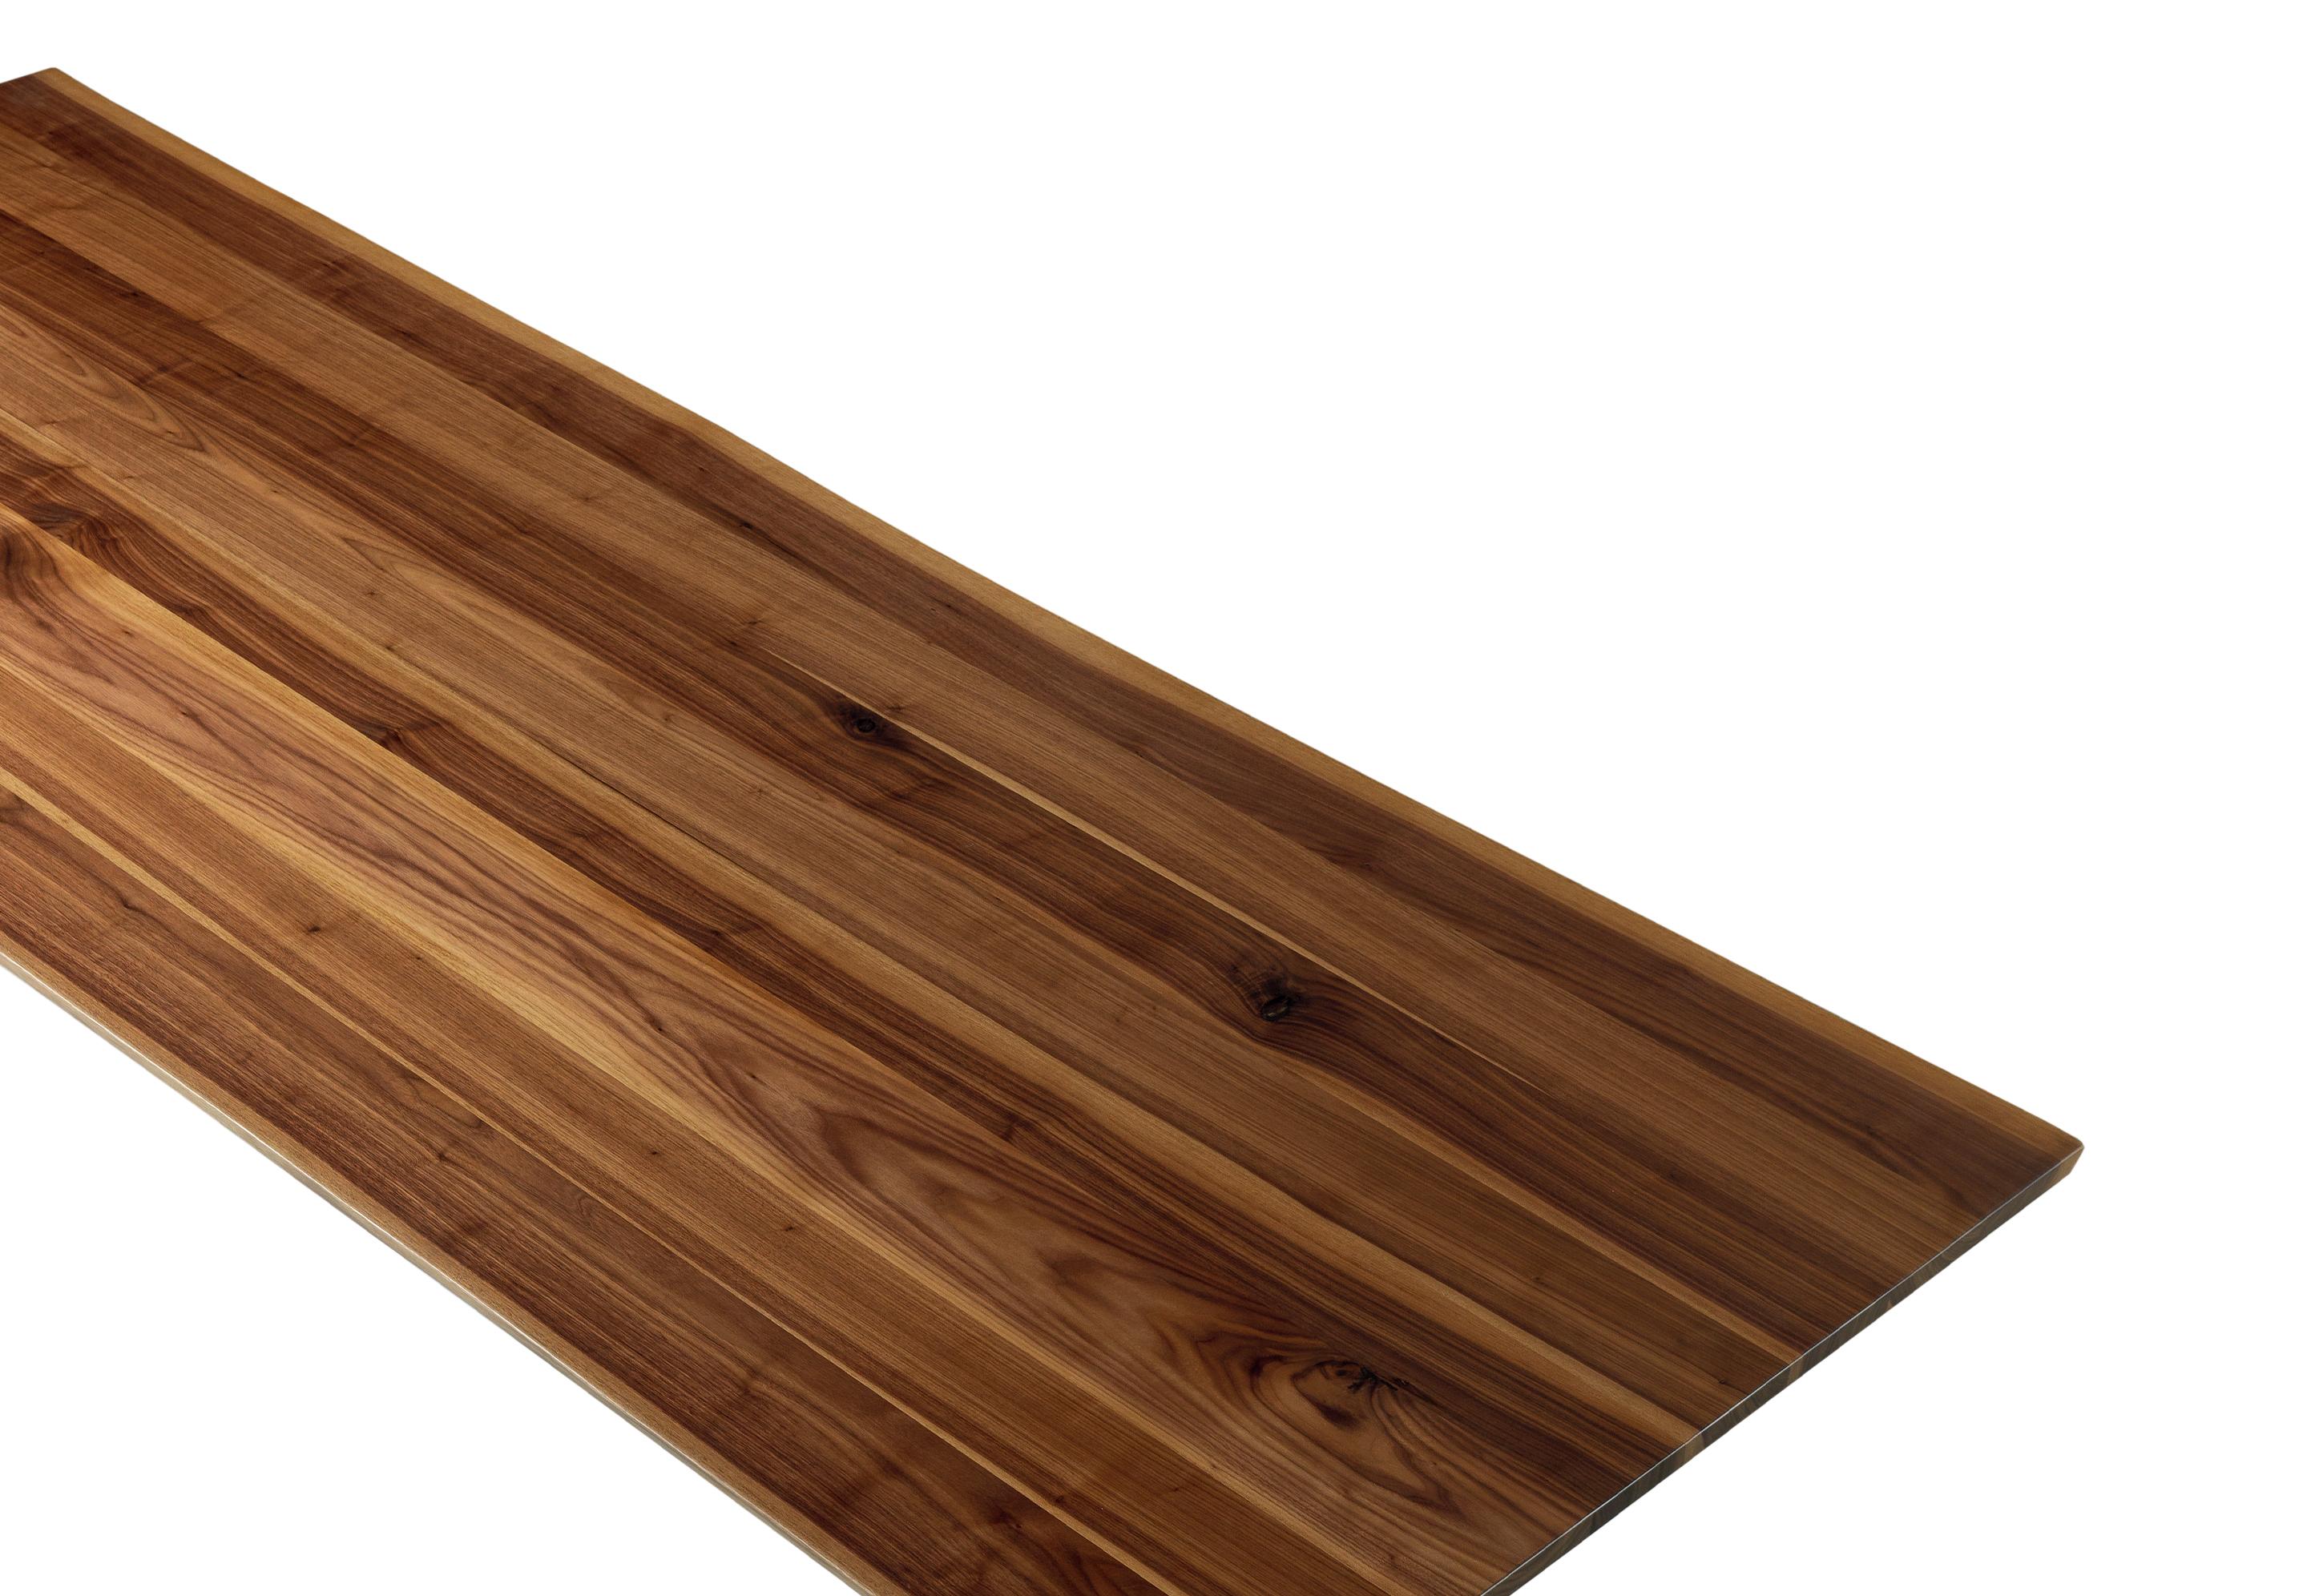 Illusion verbindet sich mit der Substanz der traditionellen Massivholzverarbeitung. Die Tische der Sospeso-Kollektion werden von den erfahrenen Händen und der Vision unserer Kunsthandwerker geschaffen. Das lineare und formale Design der Holzplatte